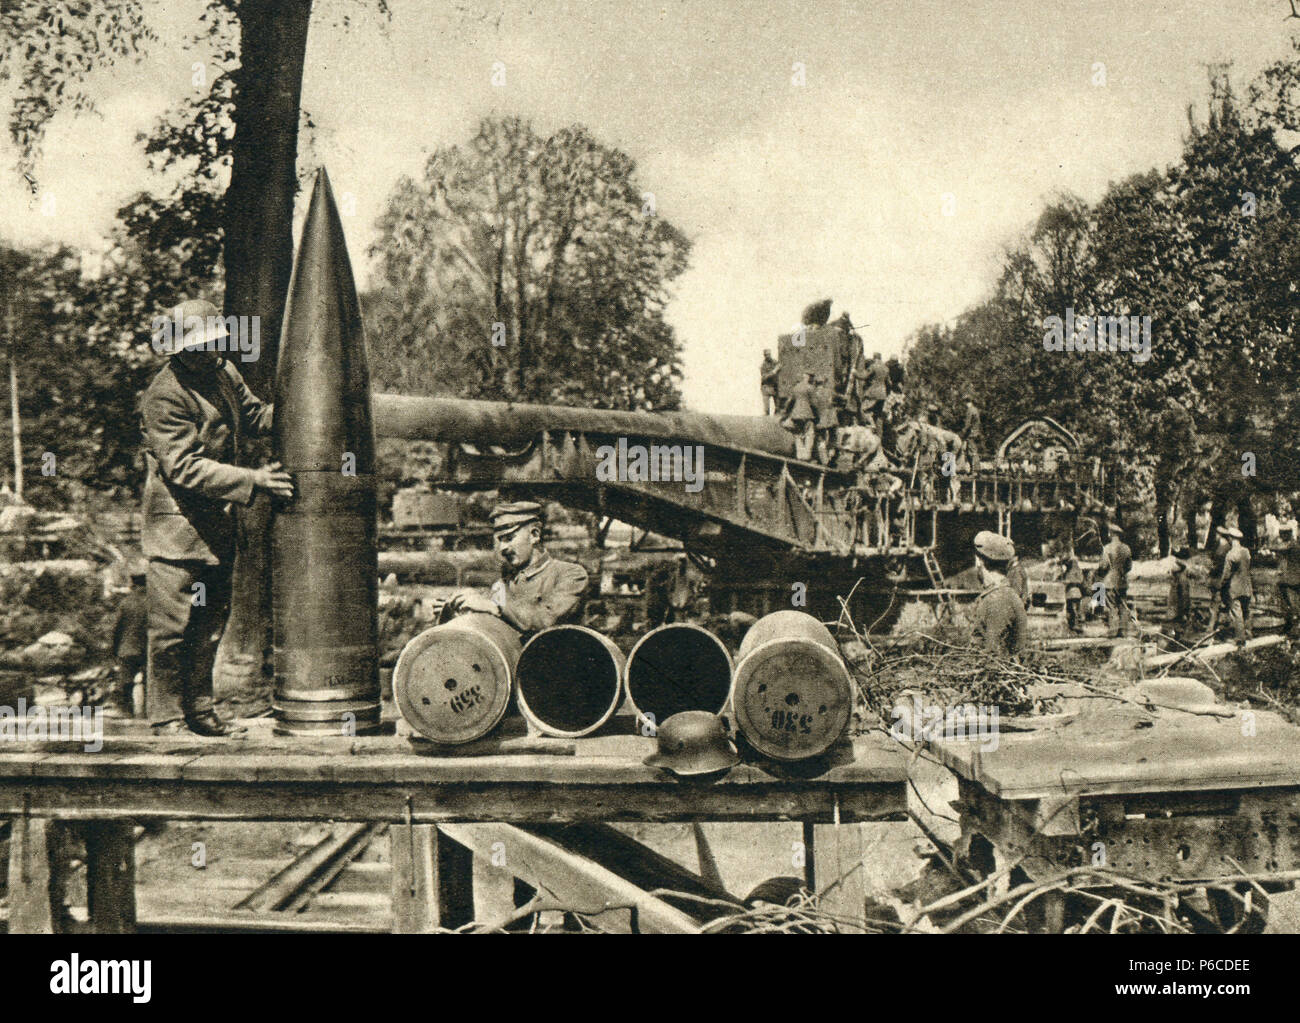 La première guerre mondiale, 38 cm SK L/45 Max, Langer Max, ww1, la première guerre mondiale, la première guerre mondiale Banque D'Images